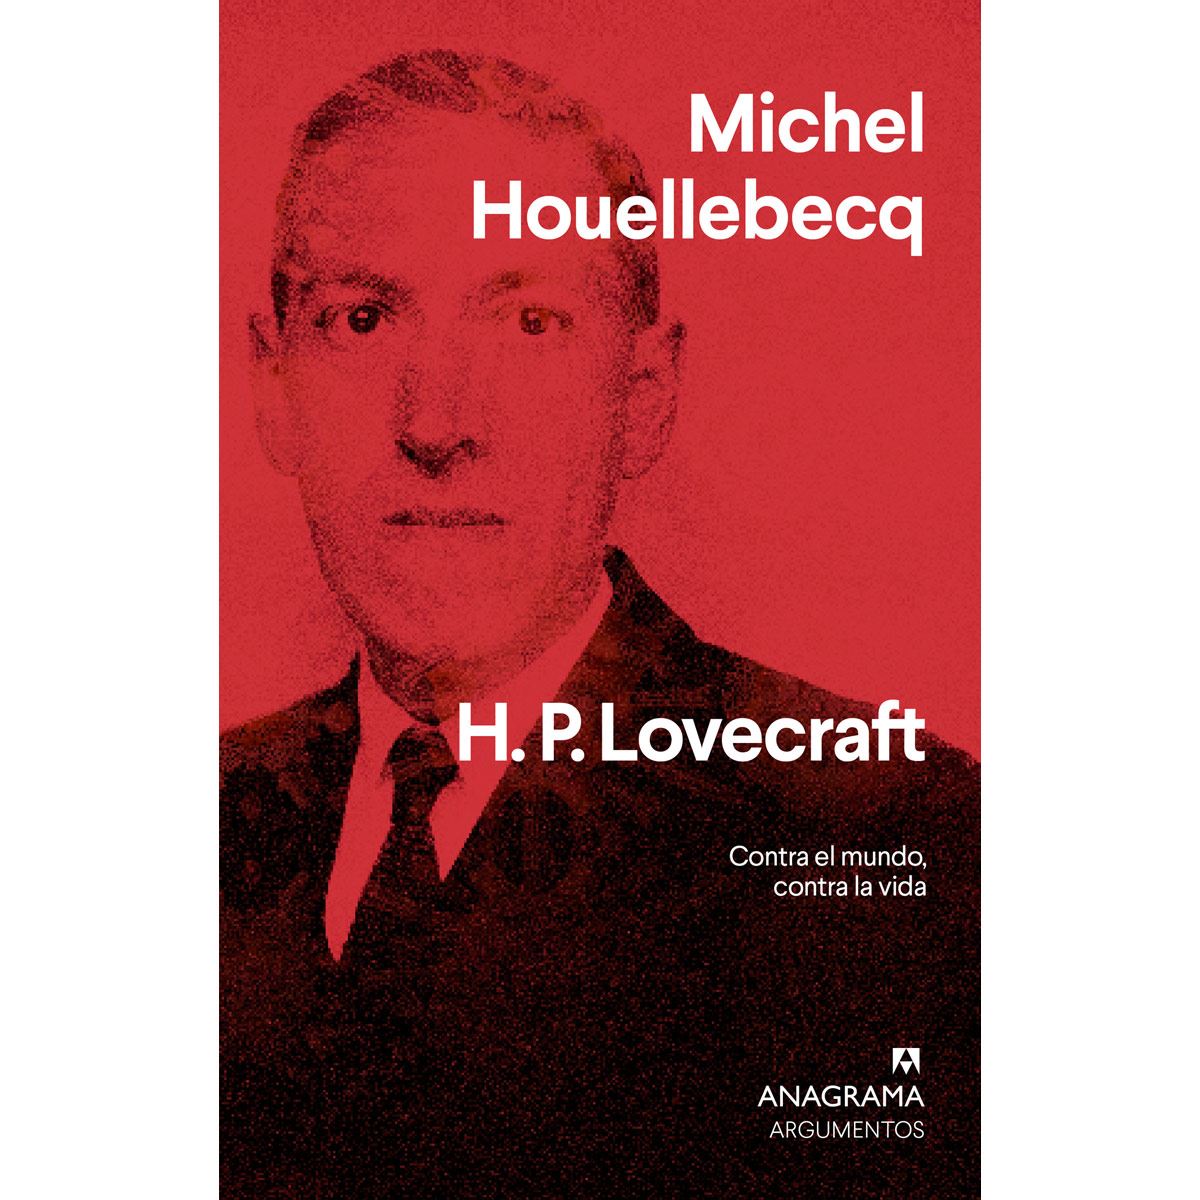 H.P. Lovecraft. Contra el mundo, contra la vida